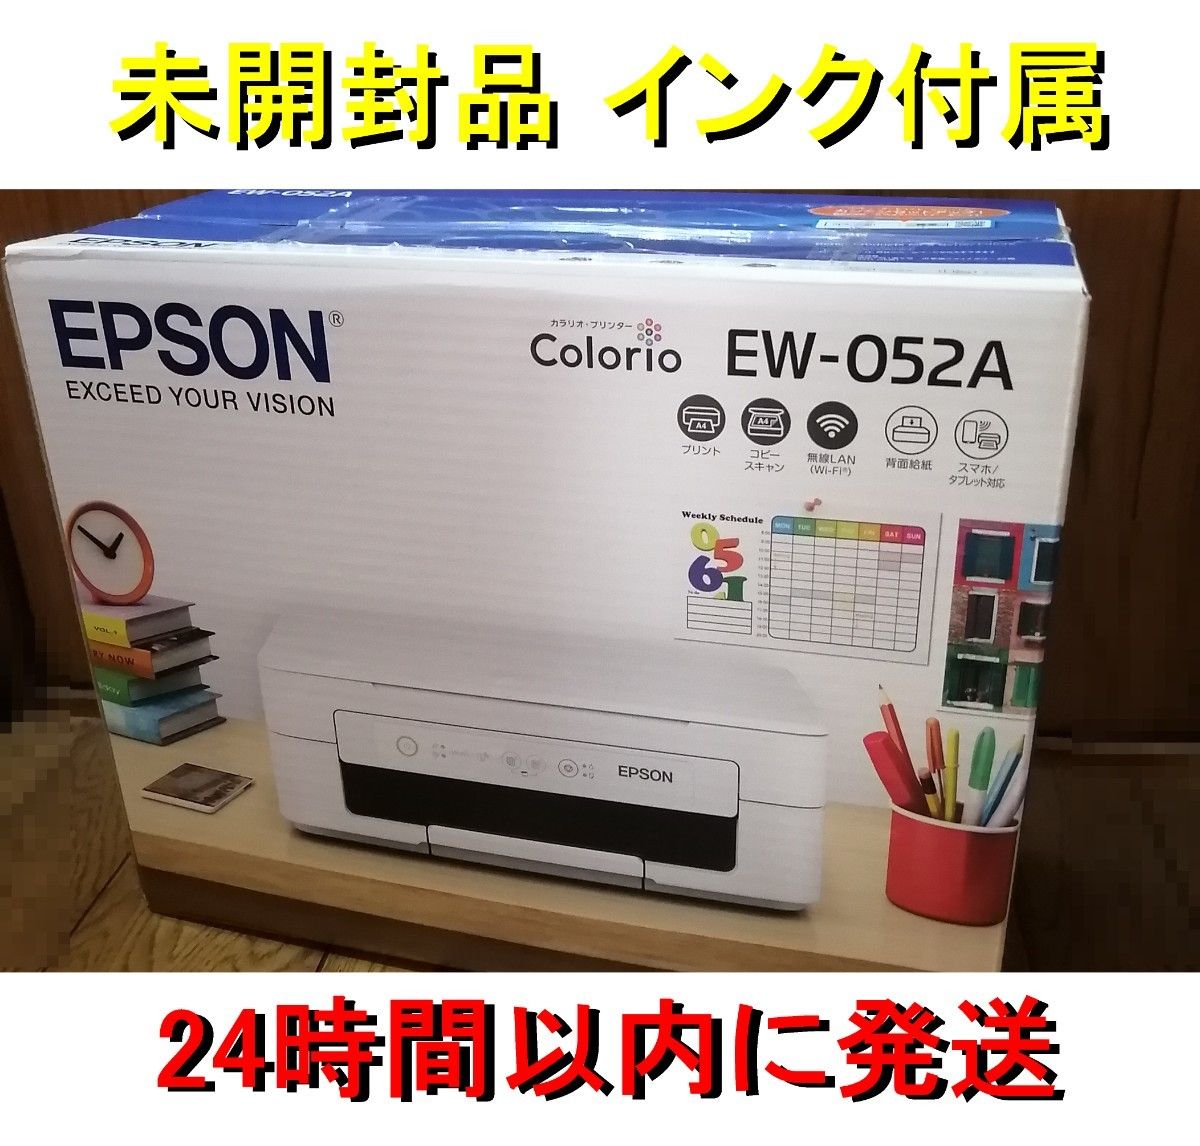 エプソン EW-052A ☆24時間以内発送☆ 未使用品 A4 プリンター EPSON